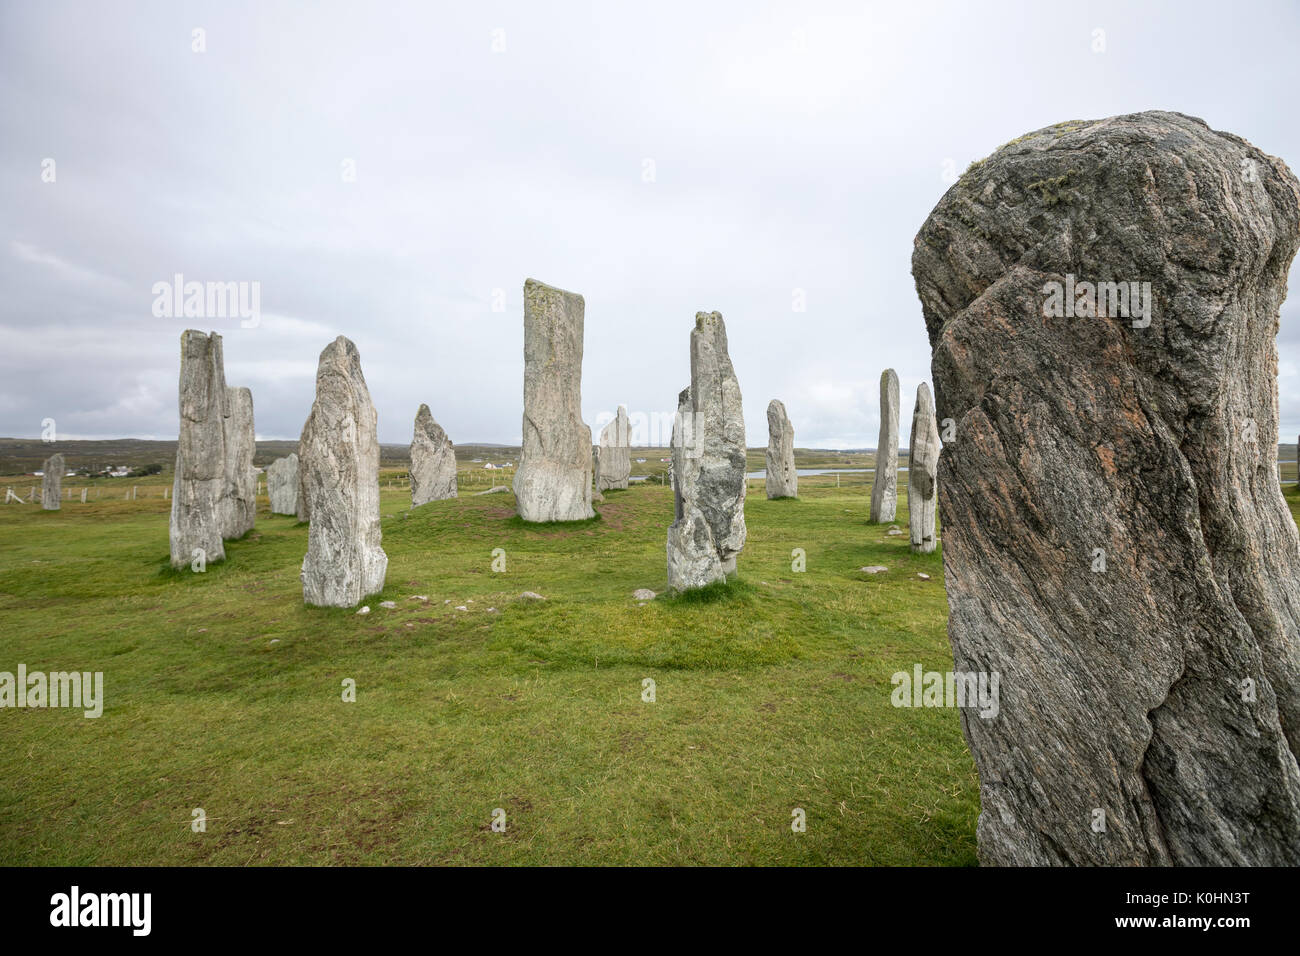 Pietra stratificata, Callanish Standing pietre pietre permanente posto in una configurazione a croce con al centro un cerchio di pietra, Callanish, Scotland, Regno Unito Foto Stock